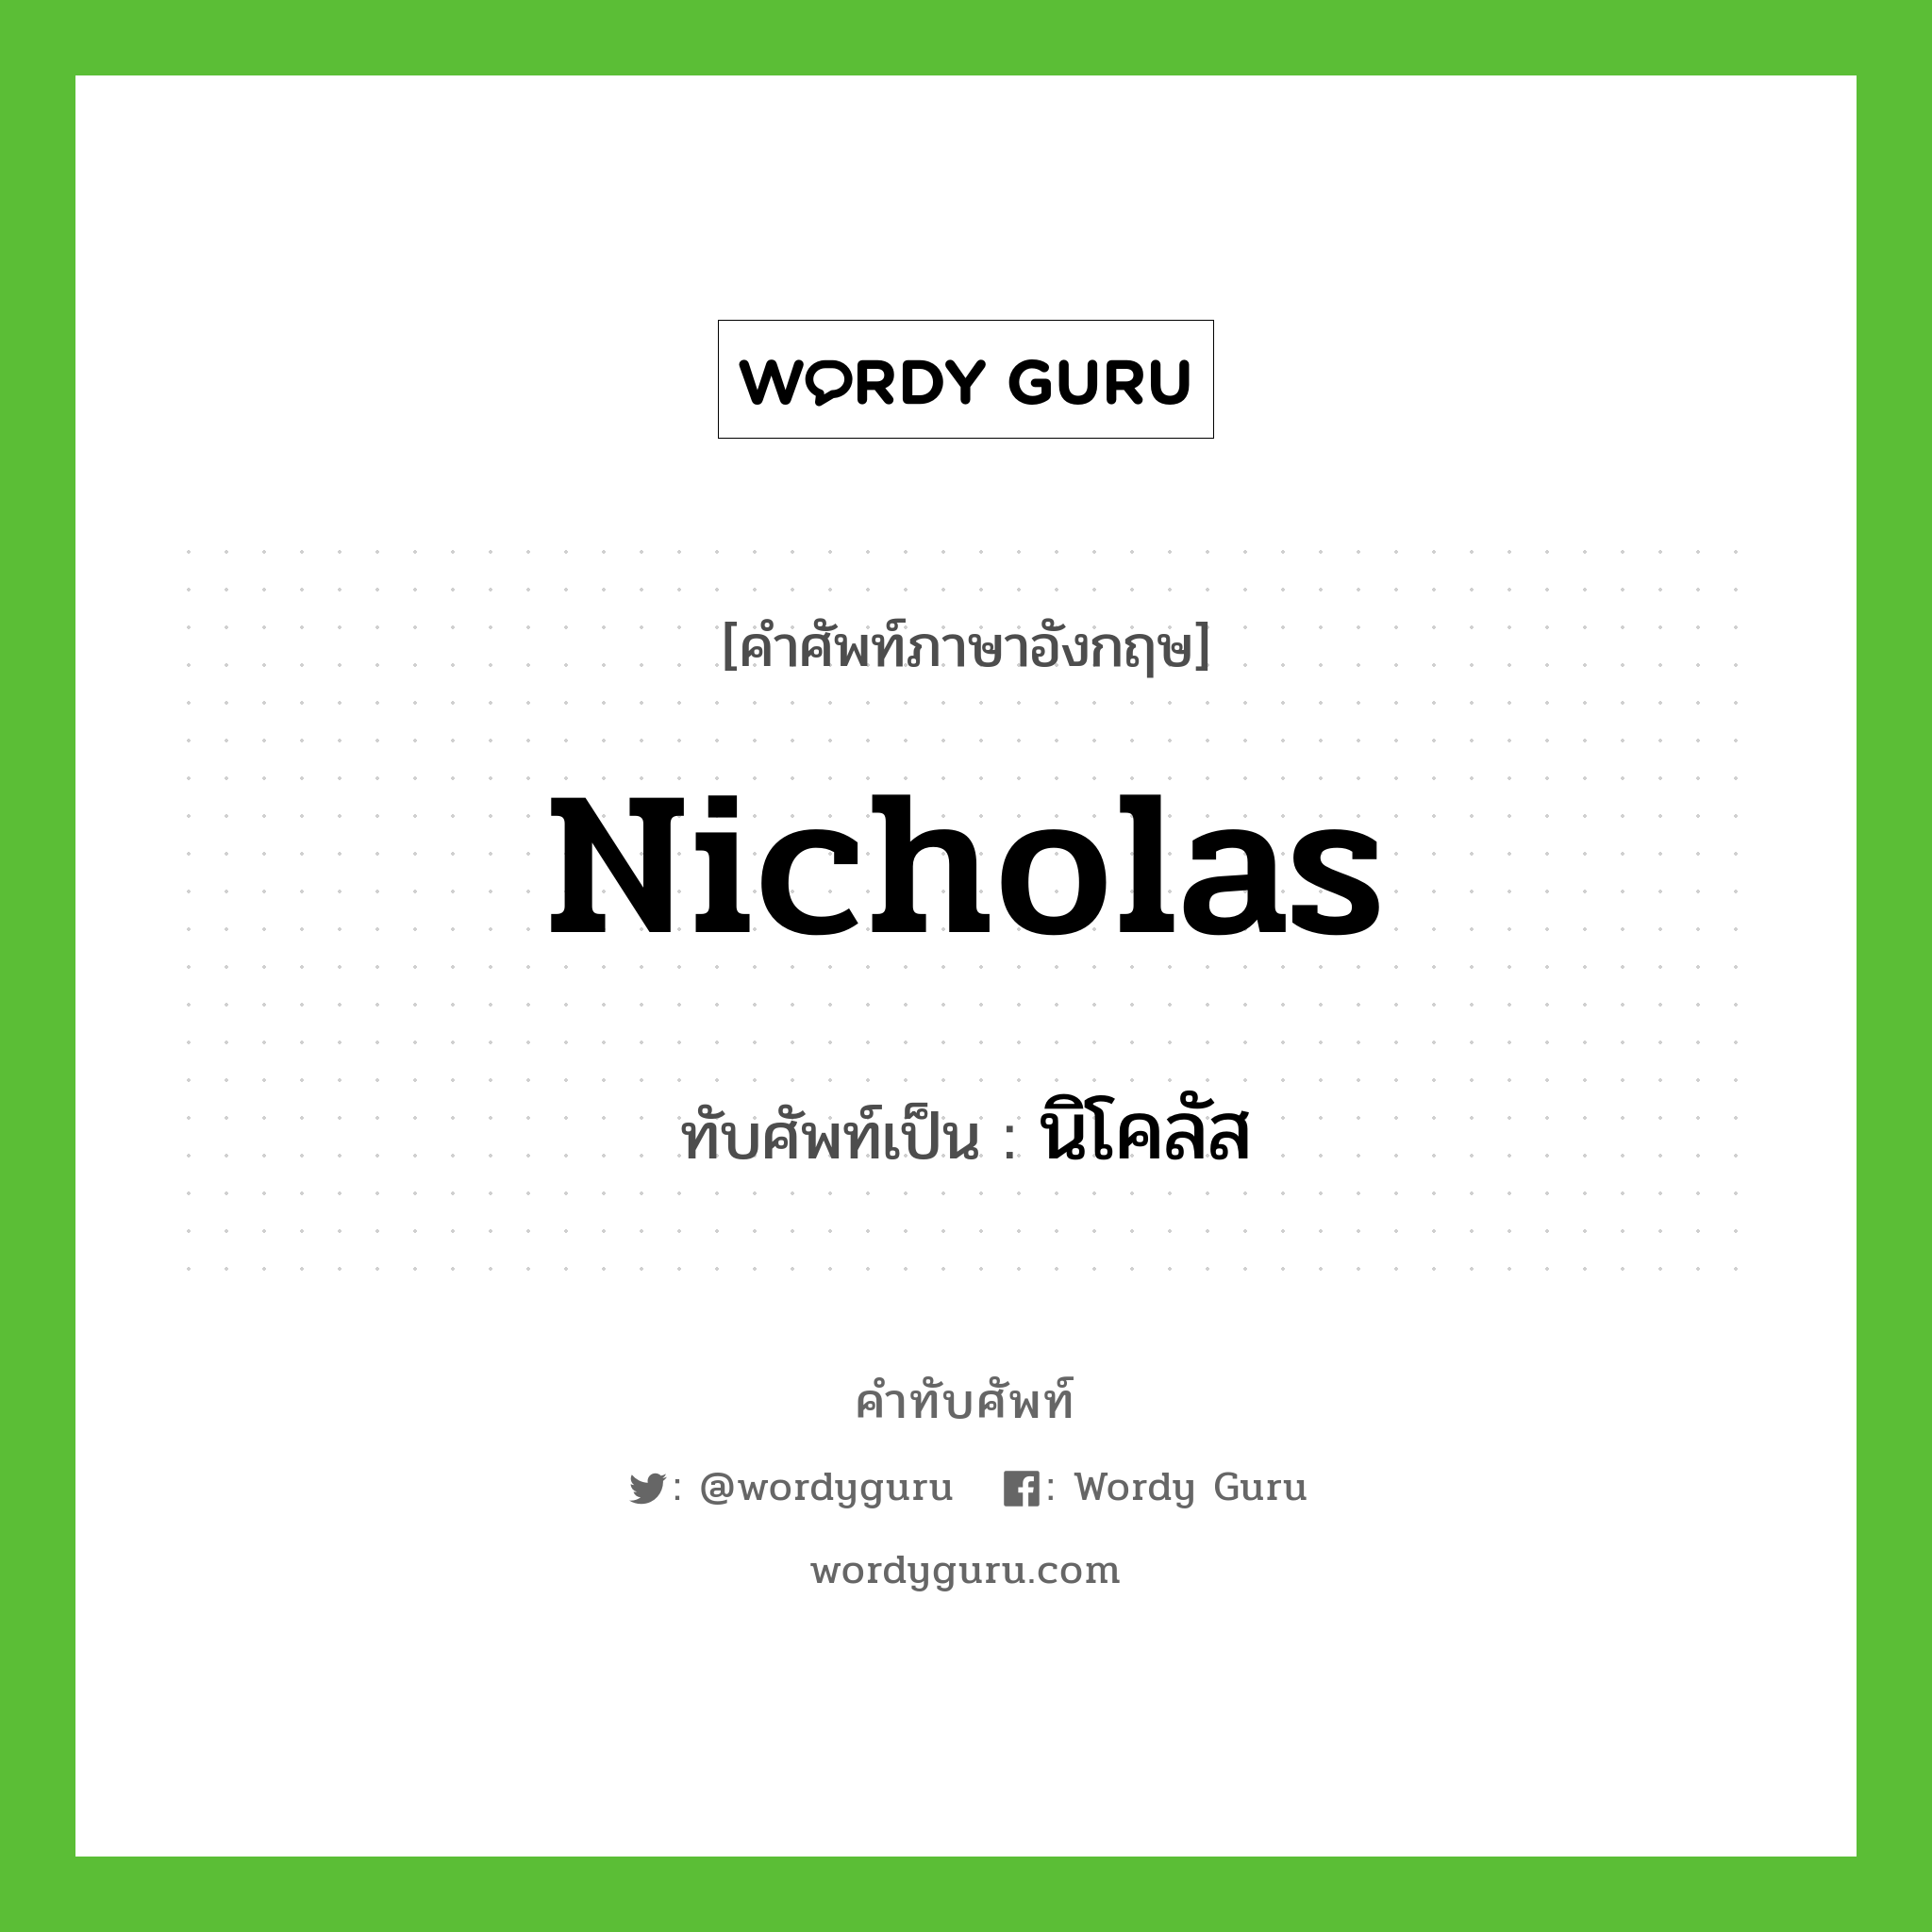 Nicholas เขียนเป็นคำไทยว่าอะไร?, คำศัพท์ภาษาอังกฤษ Nicholas ทับศัพท์เป็น นิโคลัส